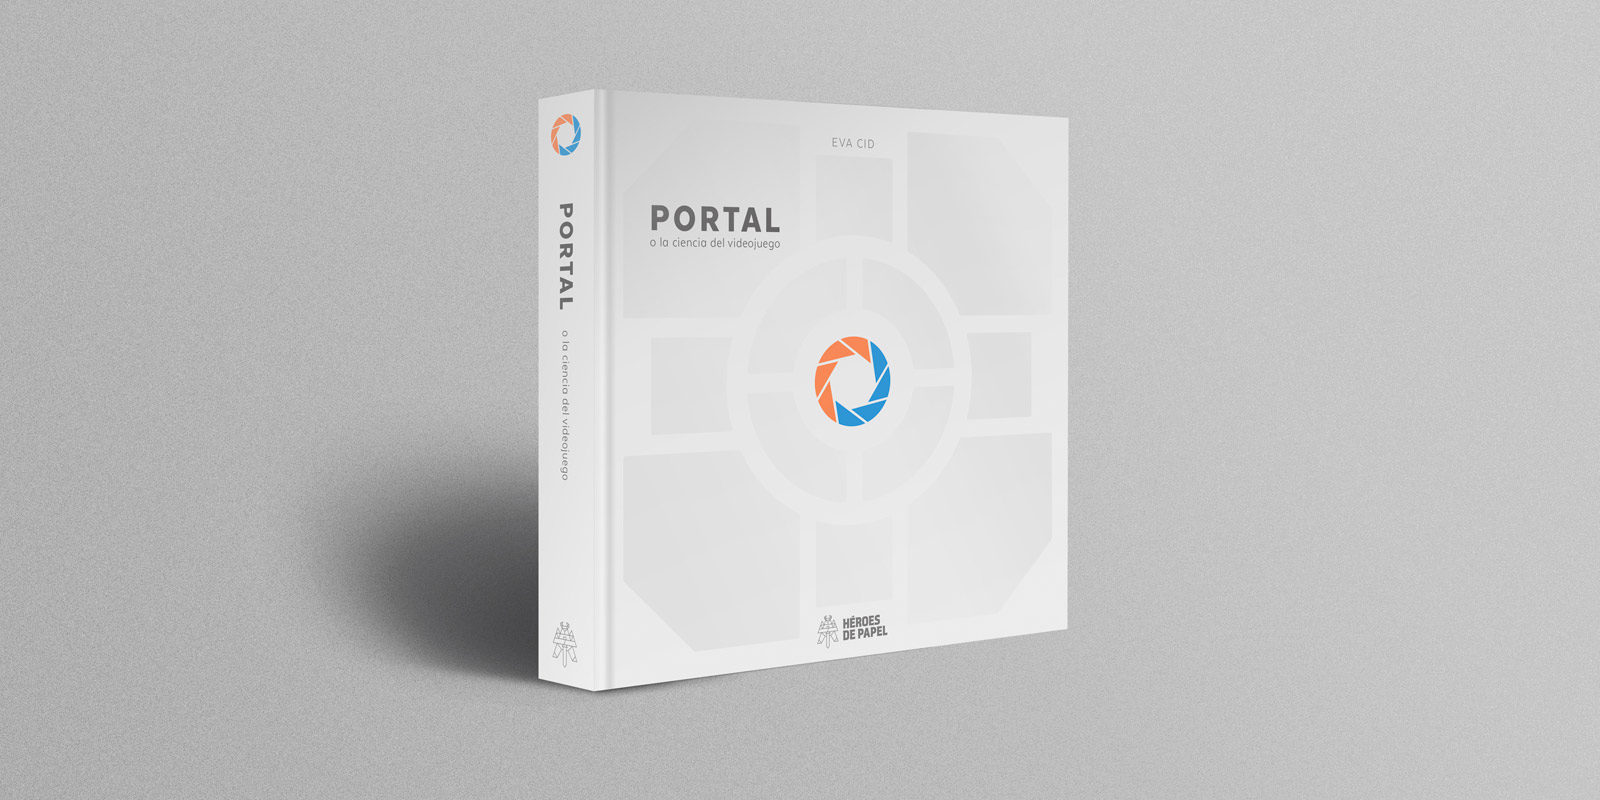 'Portal o la ciencia del videojuego' es el nuevo libro anunciado por Héroes de Papel